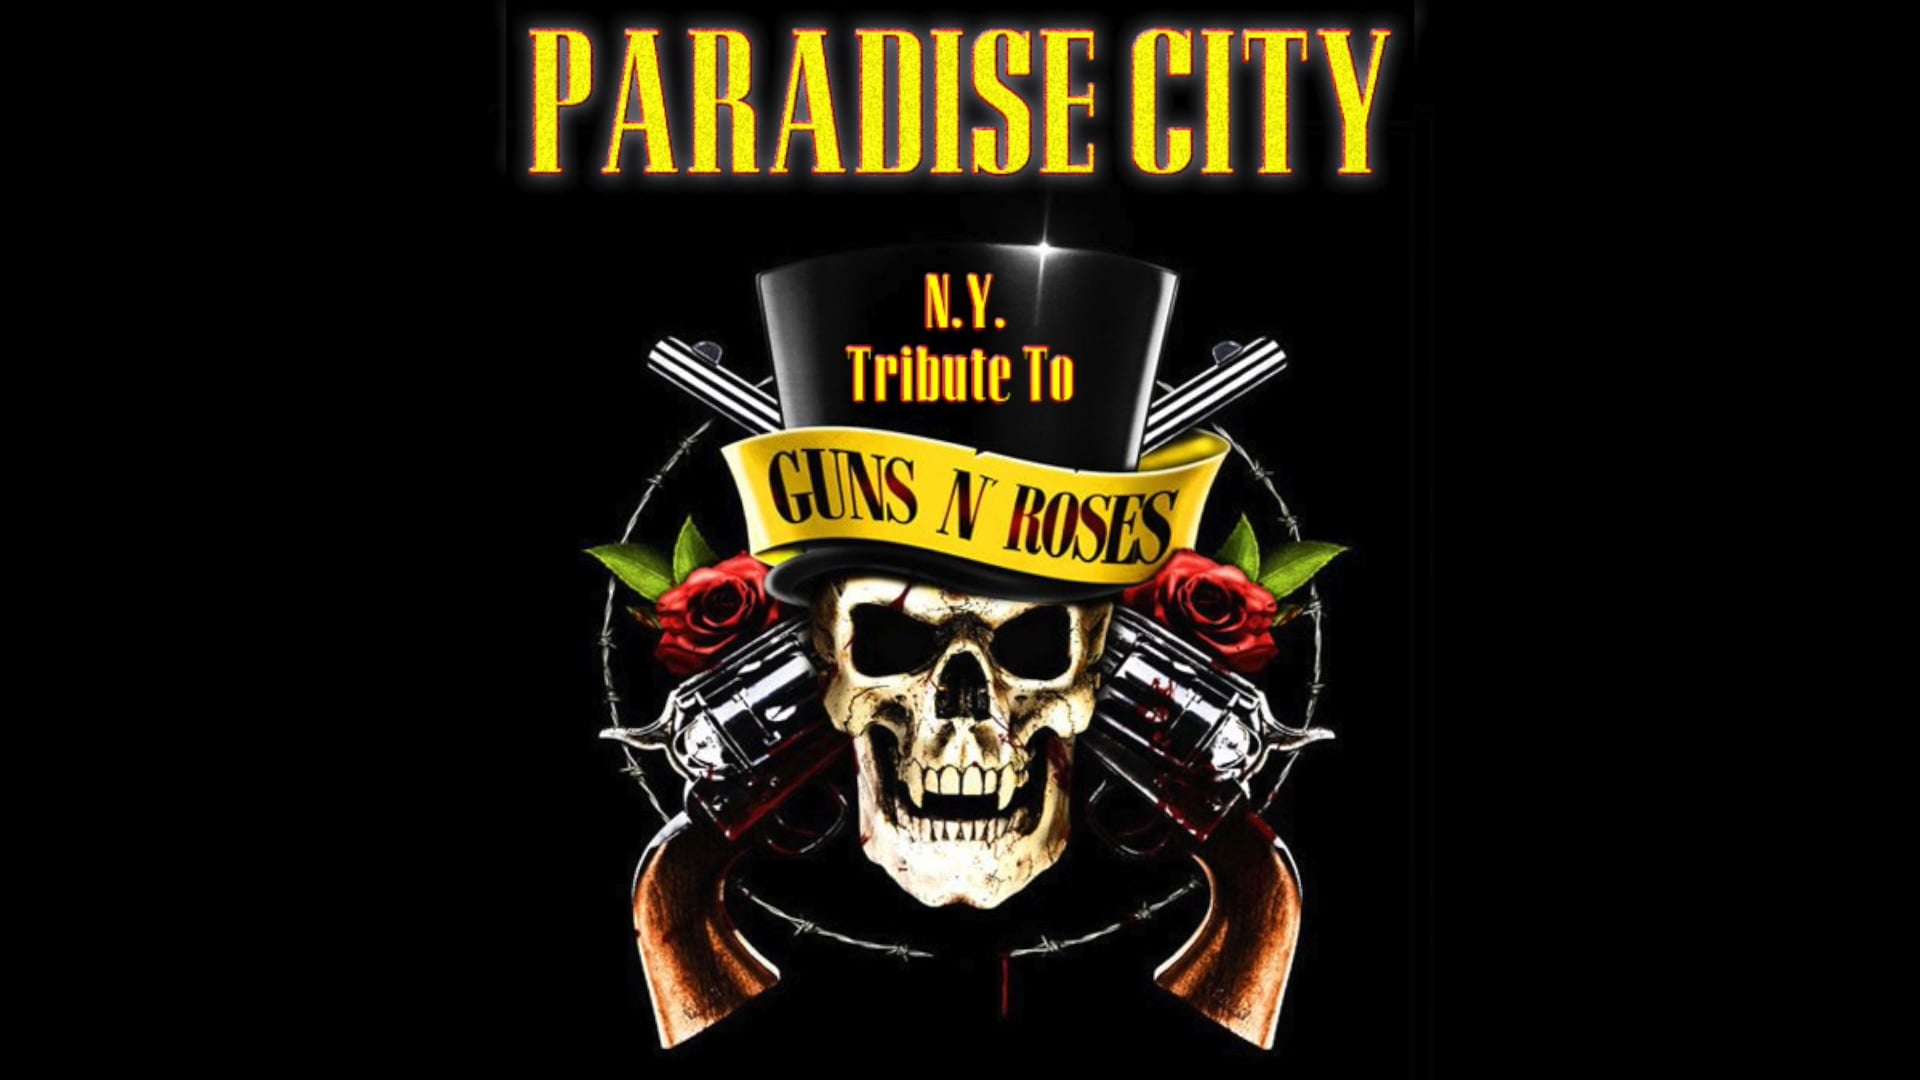 GUNS 'N' ROSES / PARADISE CITY